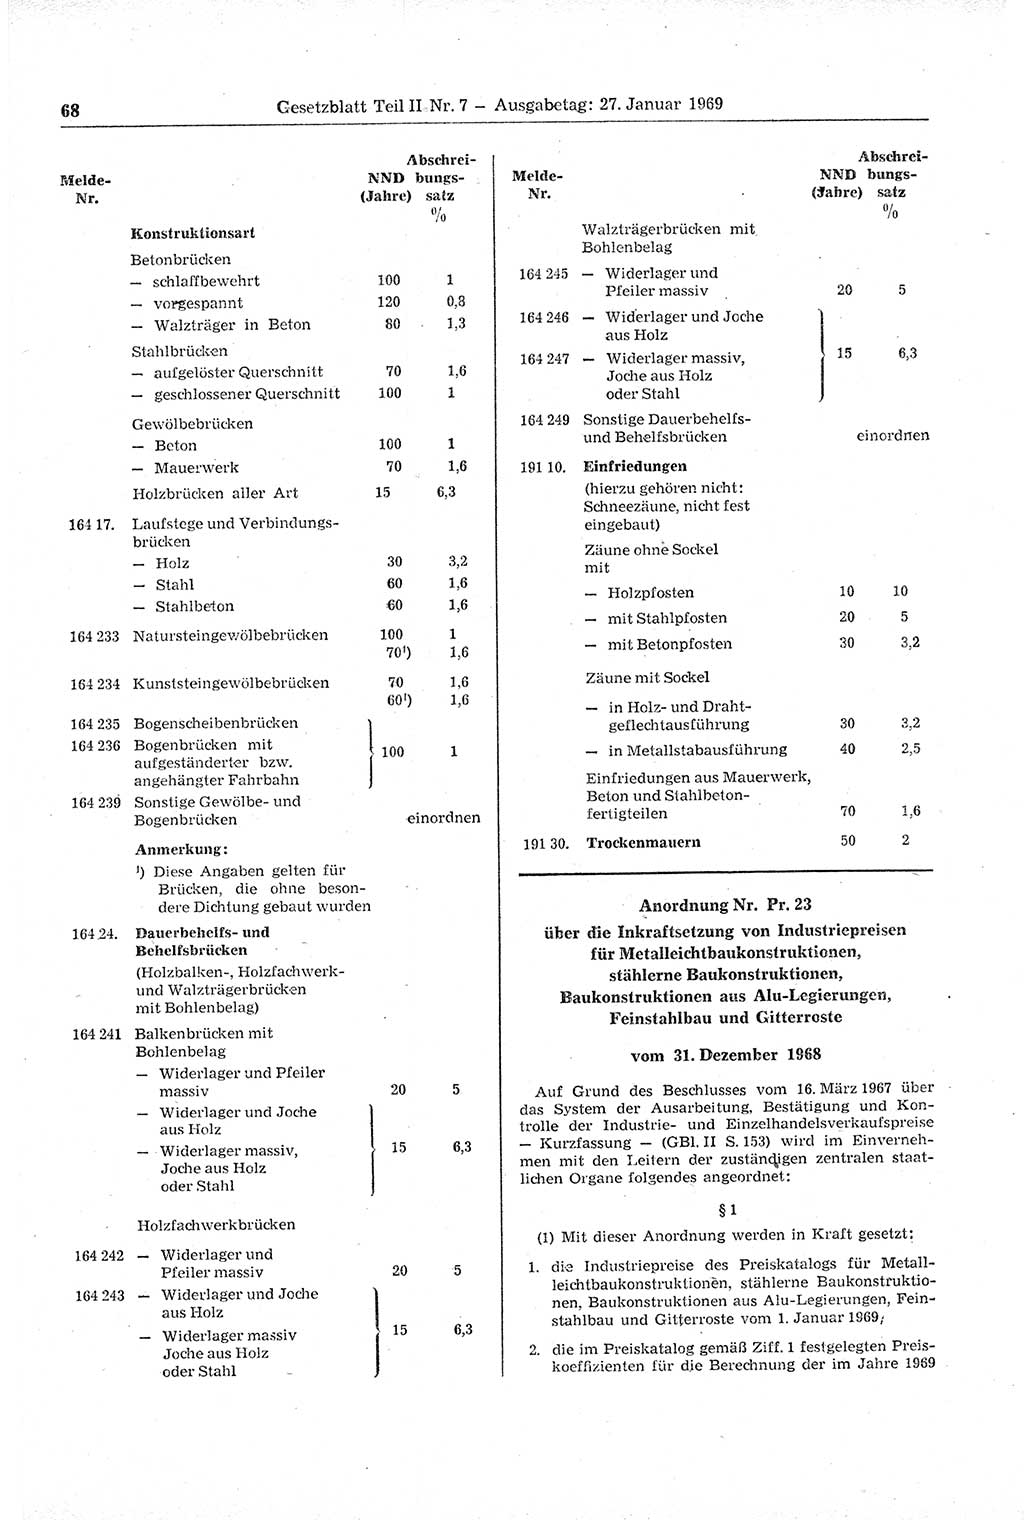 Gesetzblatt (GBl.) der Deutschen Demokratischen Republik (DDR) Teil ⅠⅠ 1969, Seite 68 (GBl. DDR ⅠⅠ 1969, S. 68)